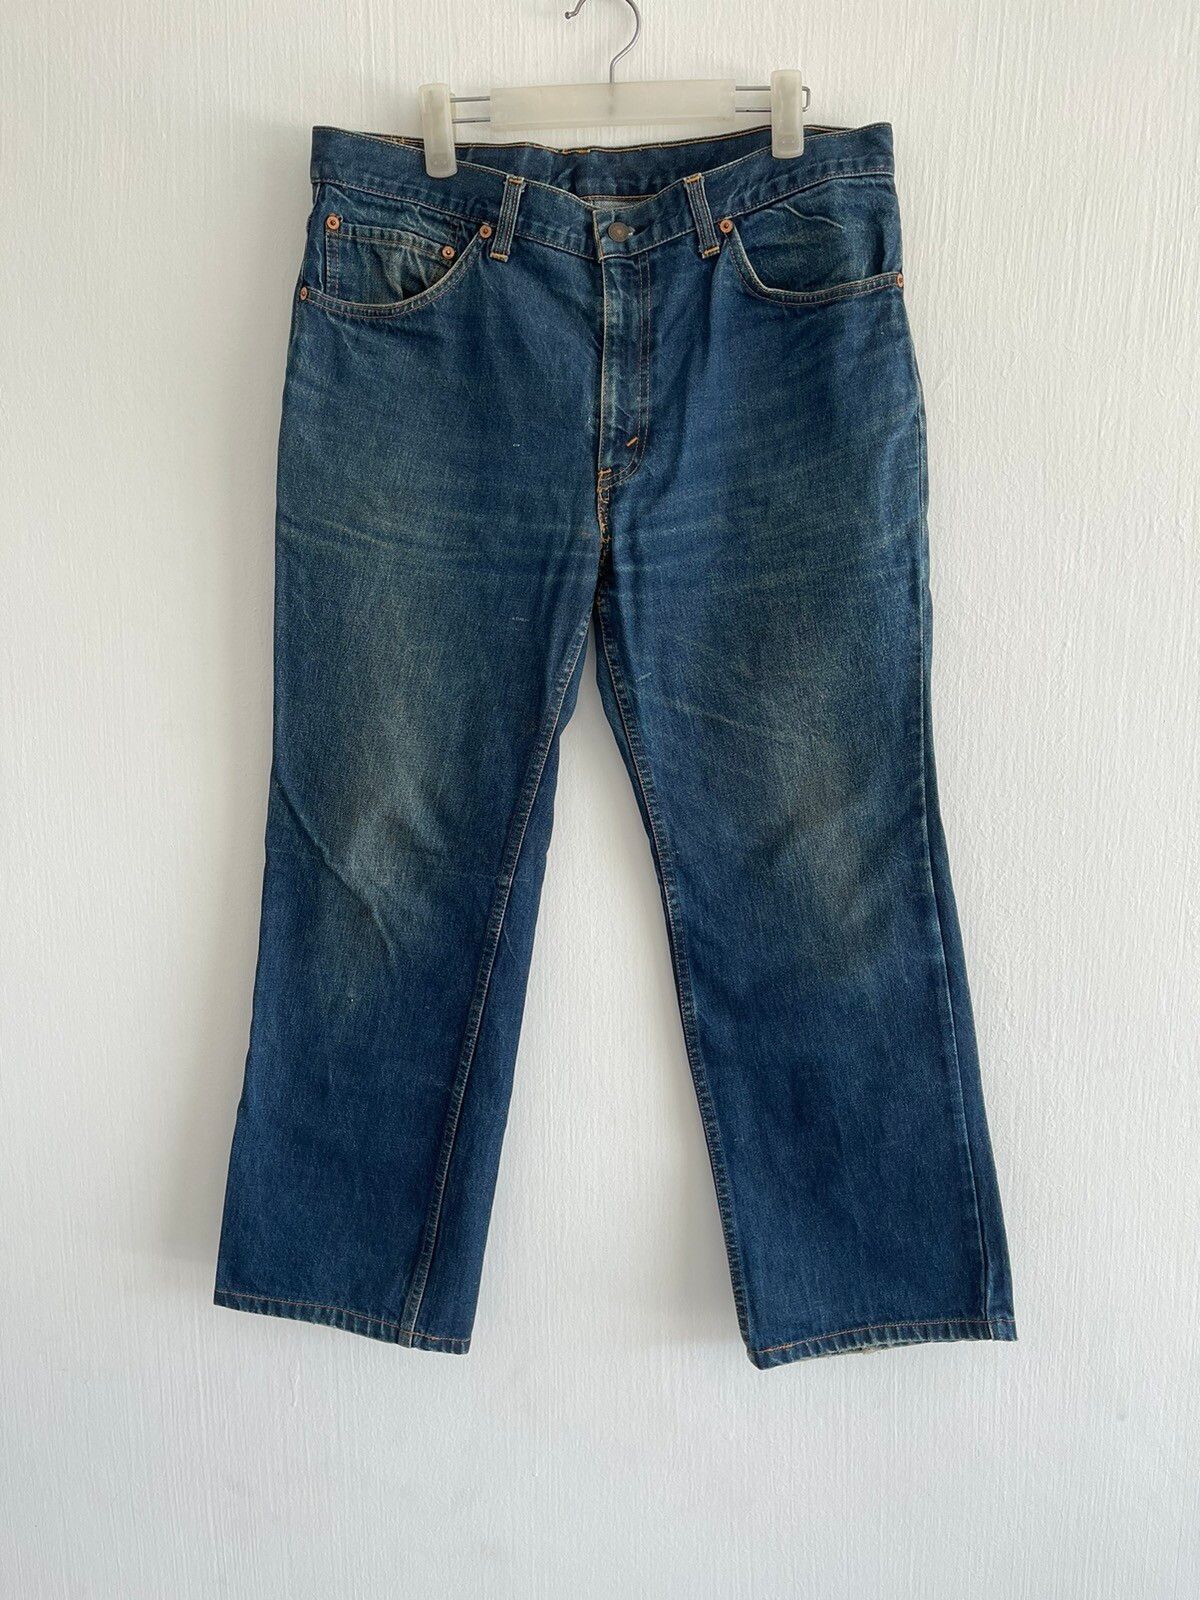 Vintage Levis jeans - 1